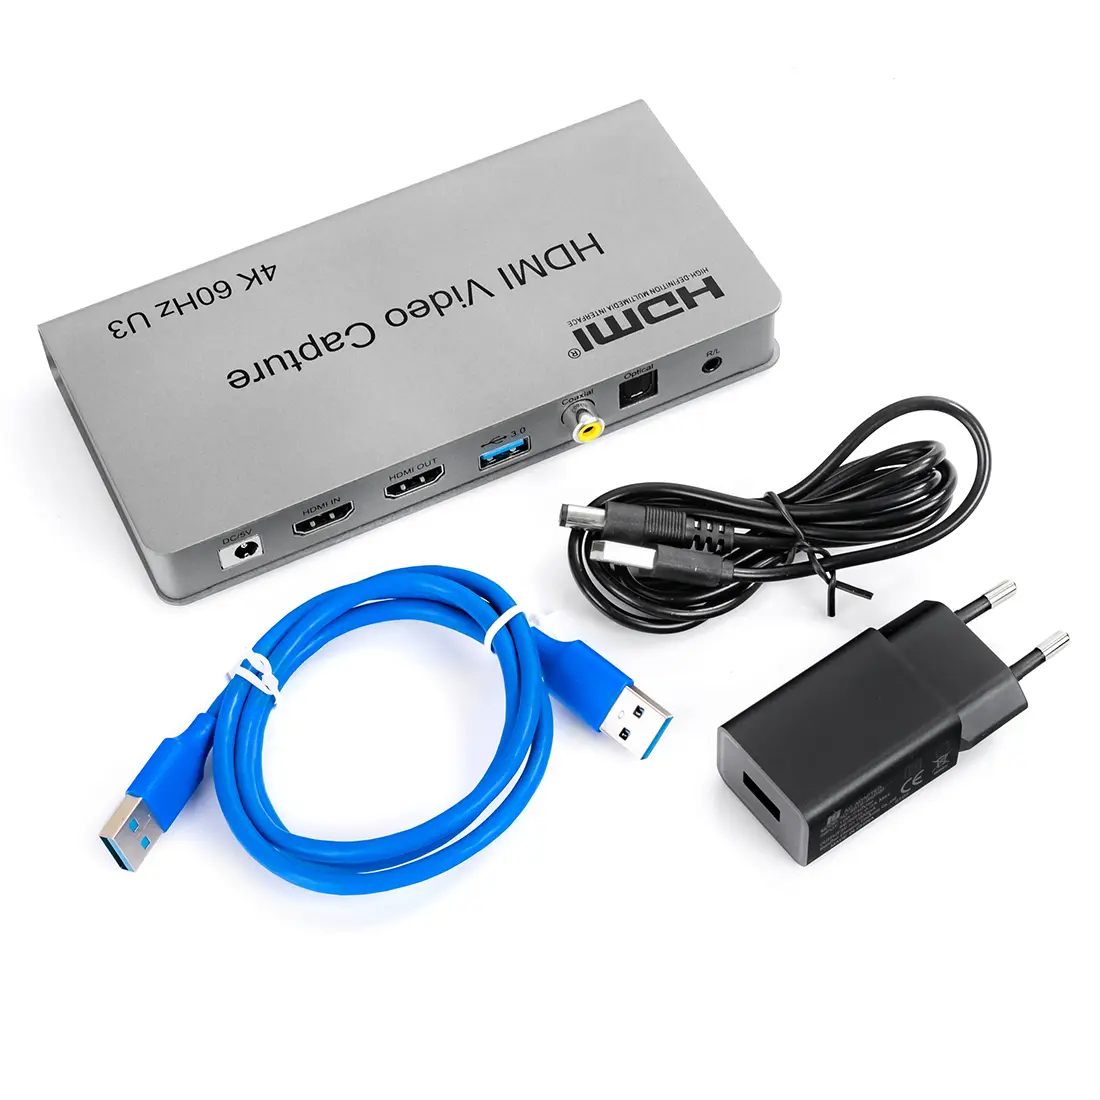 Grabber Nagrywarka HDMI Spacetronik SP-HVG20 USB 3.0 60FPS 4K do PC